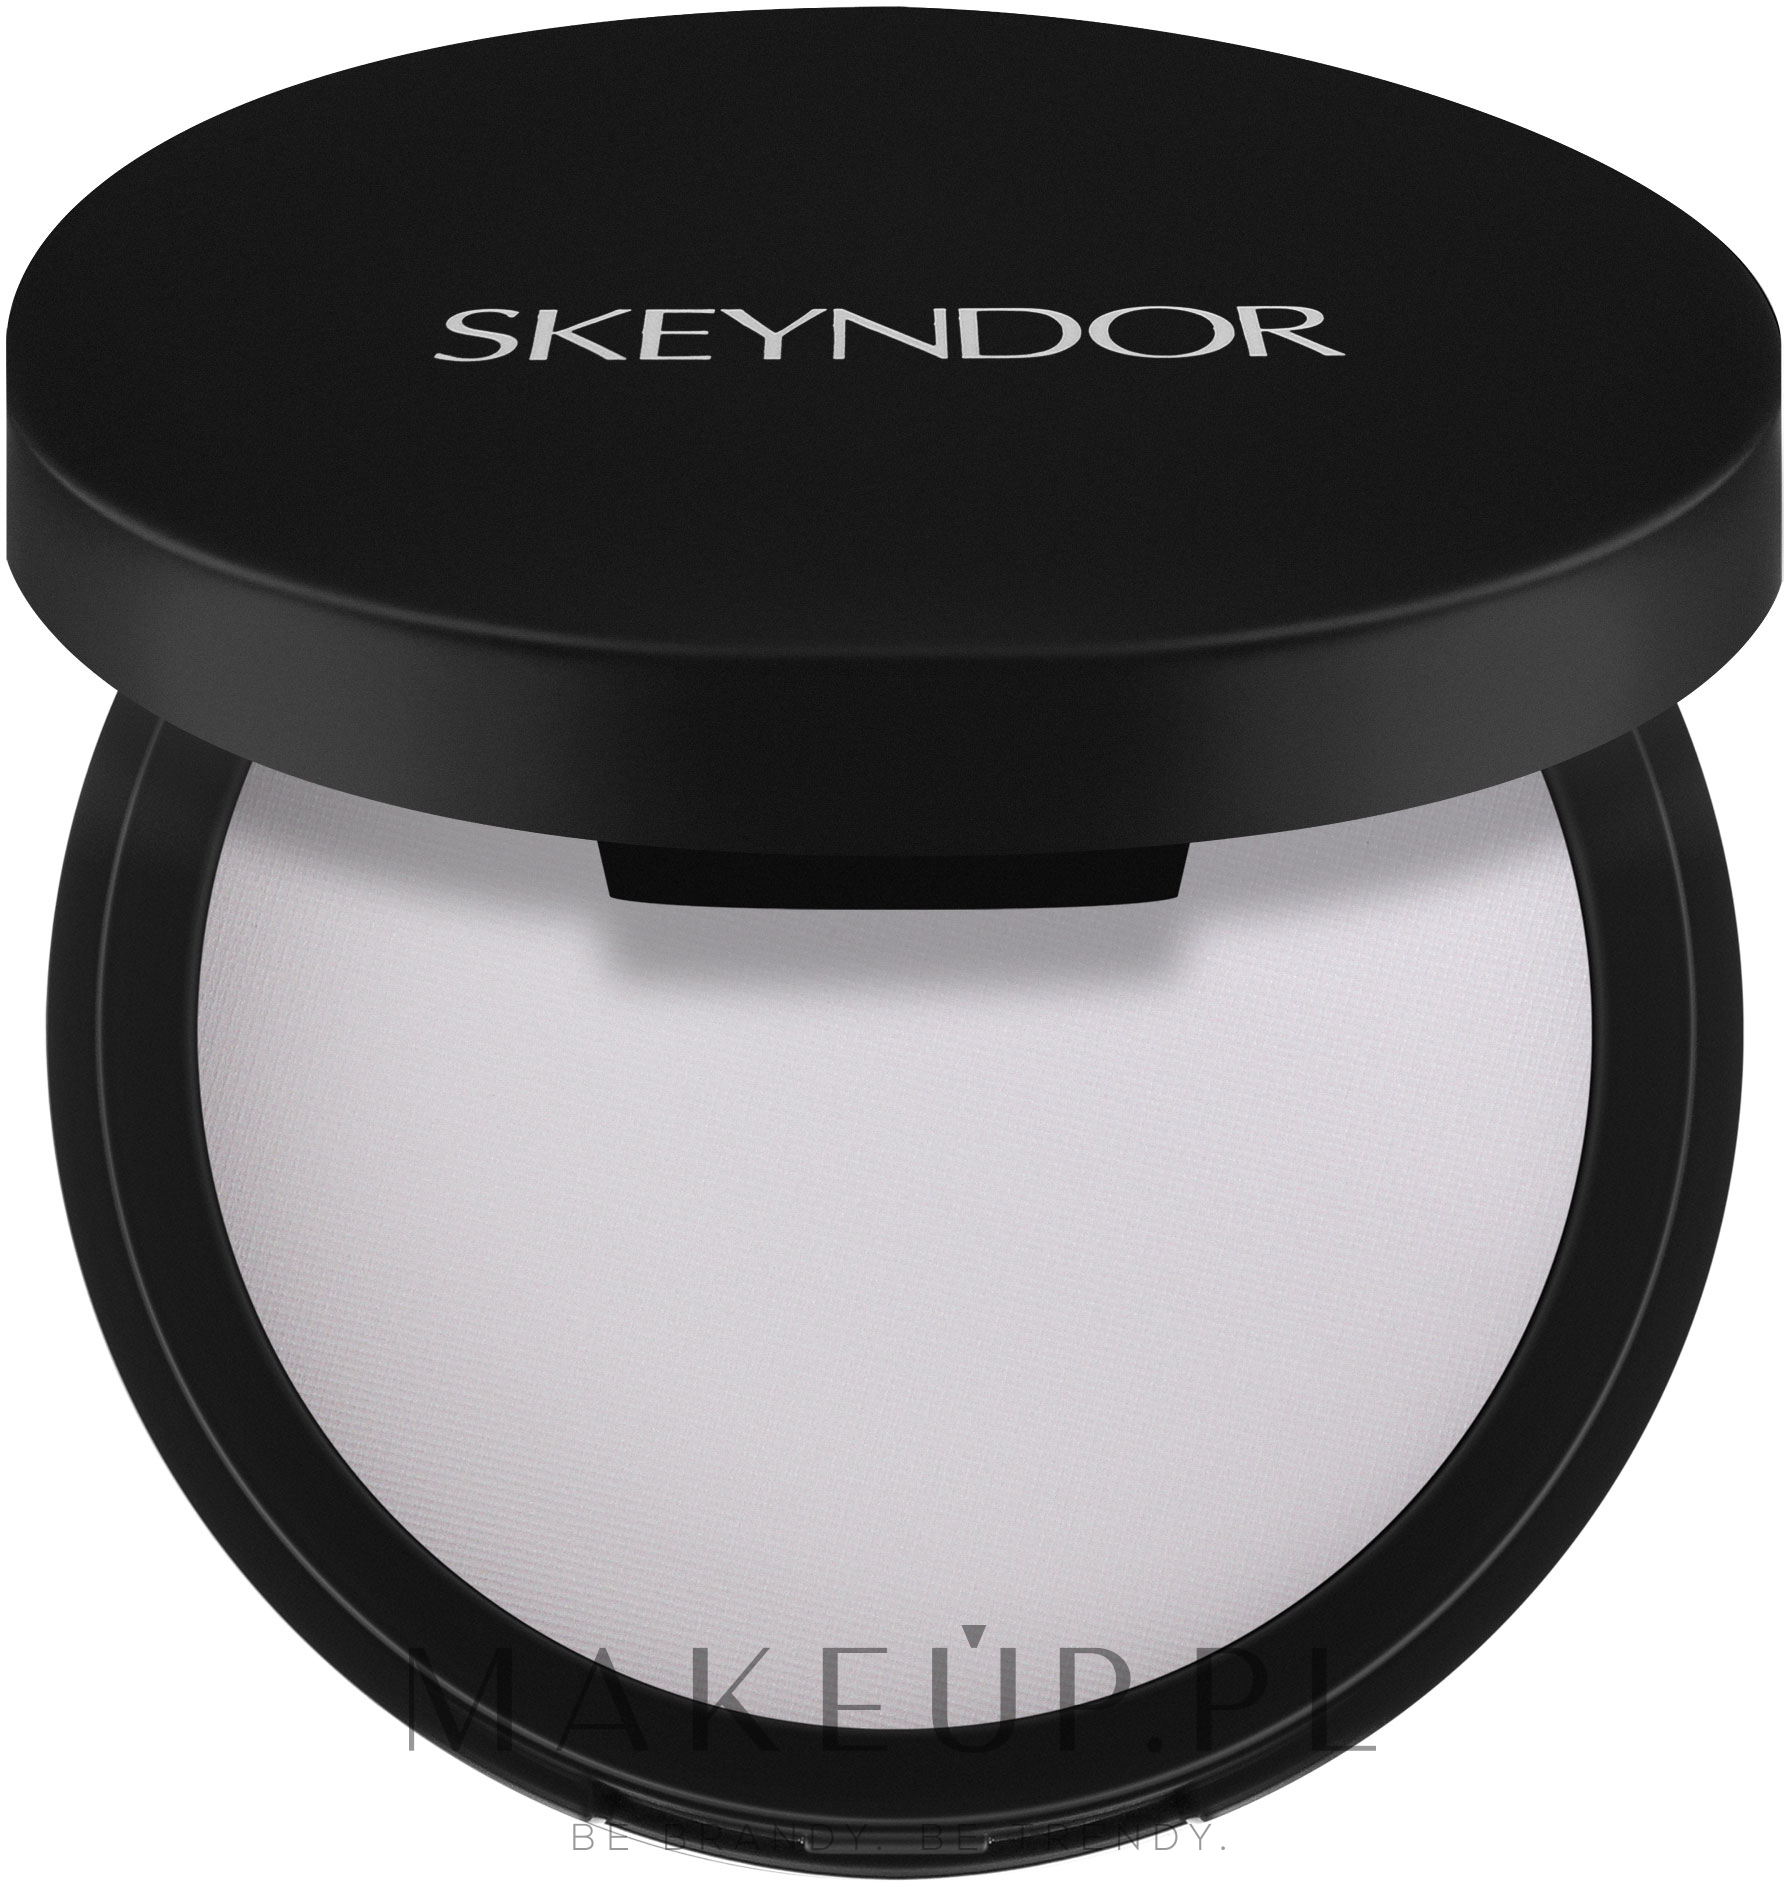 Kompaktowy puder matujący do twarzy - Skeyndor SkinCare Make Up High Definition Compact Powder — Zdjęcie 12.58 g